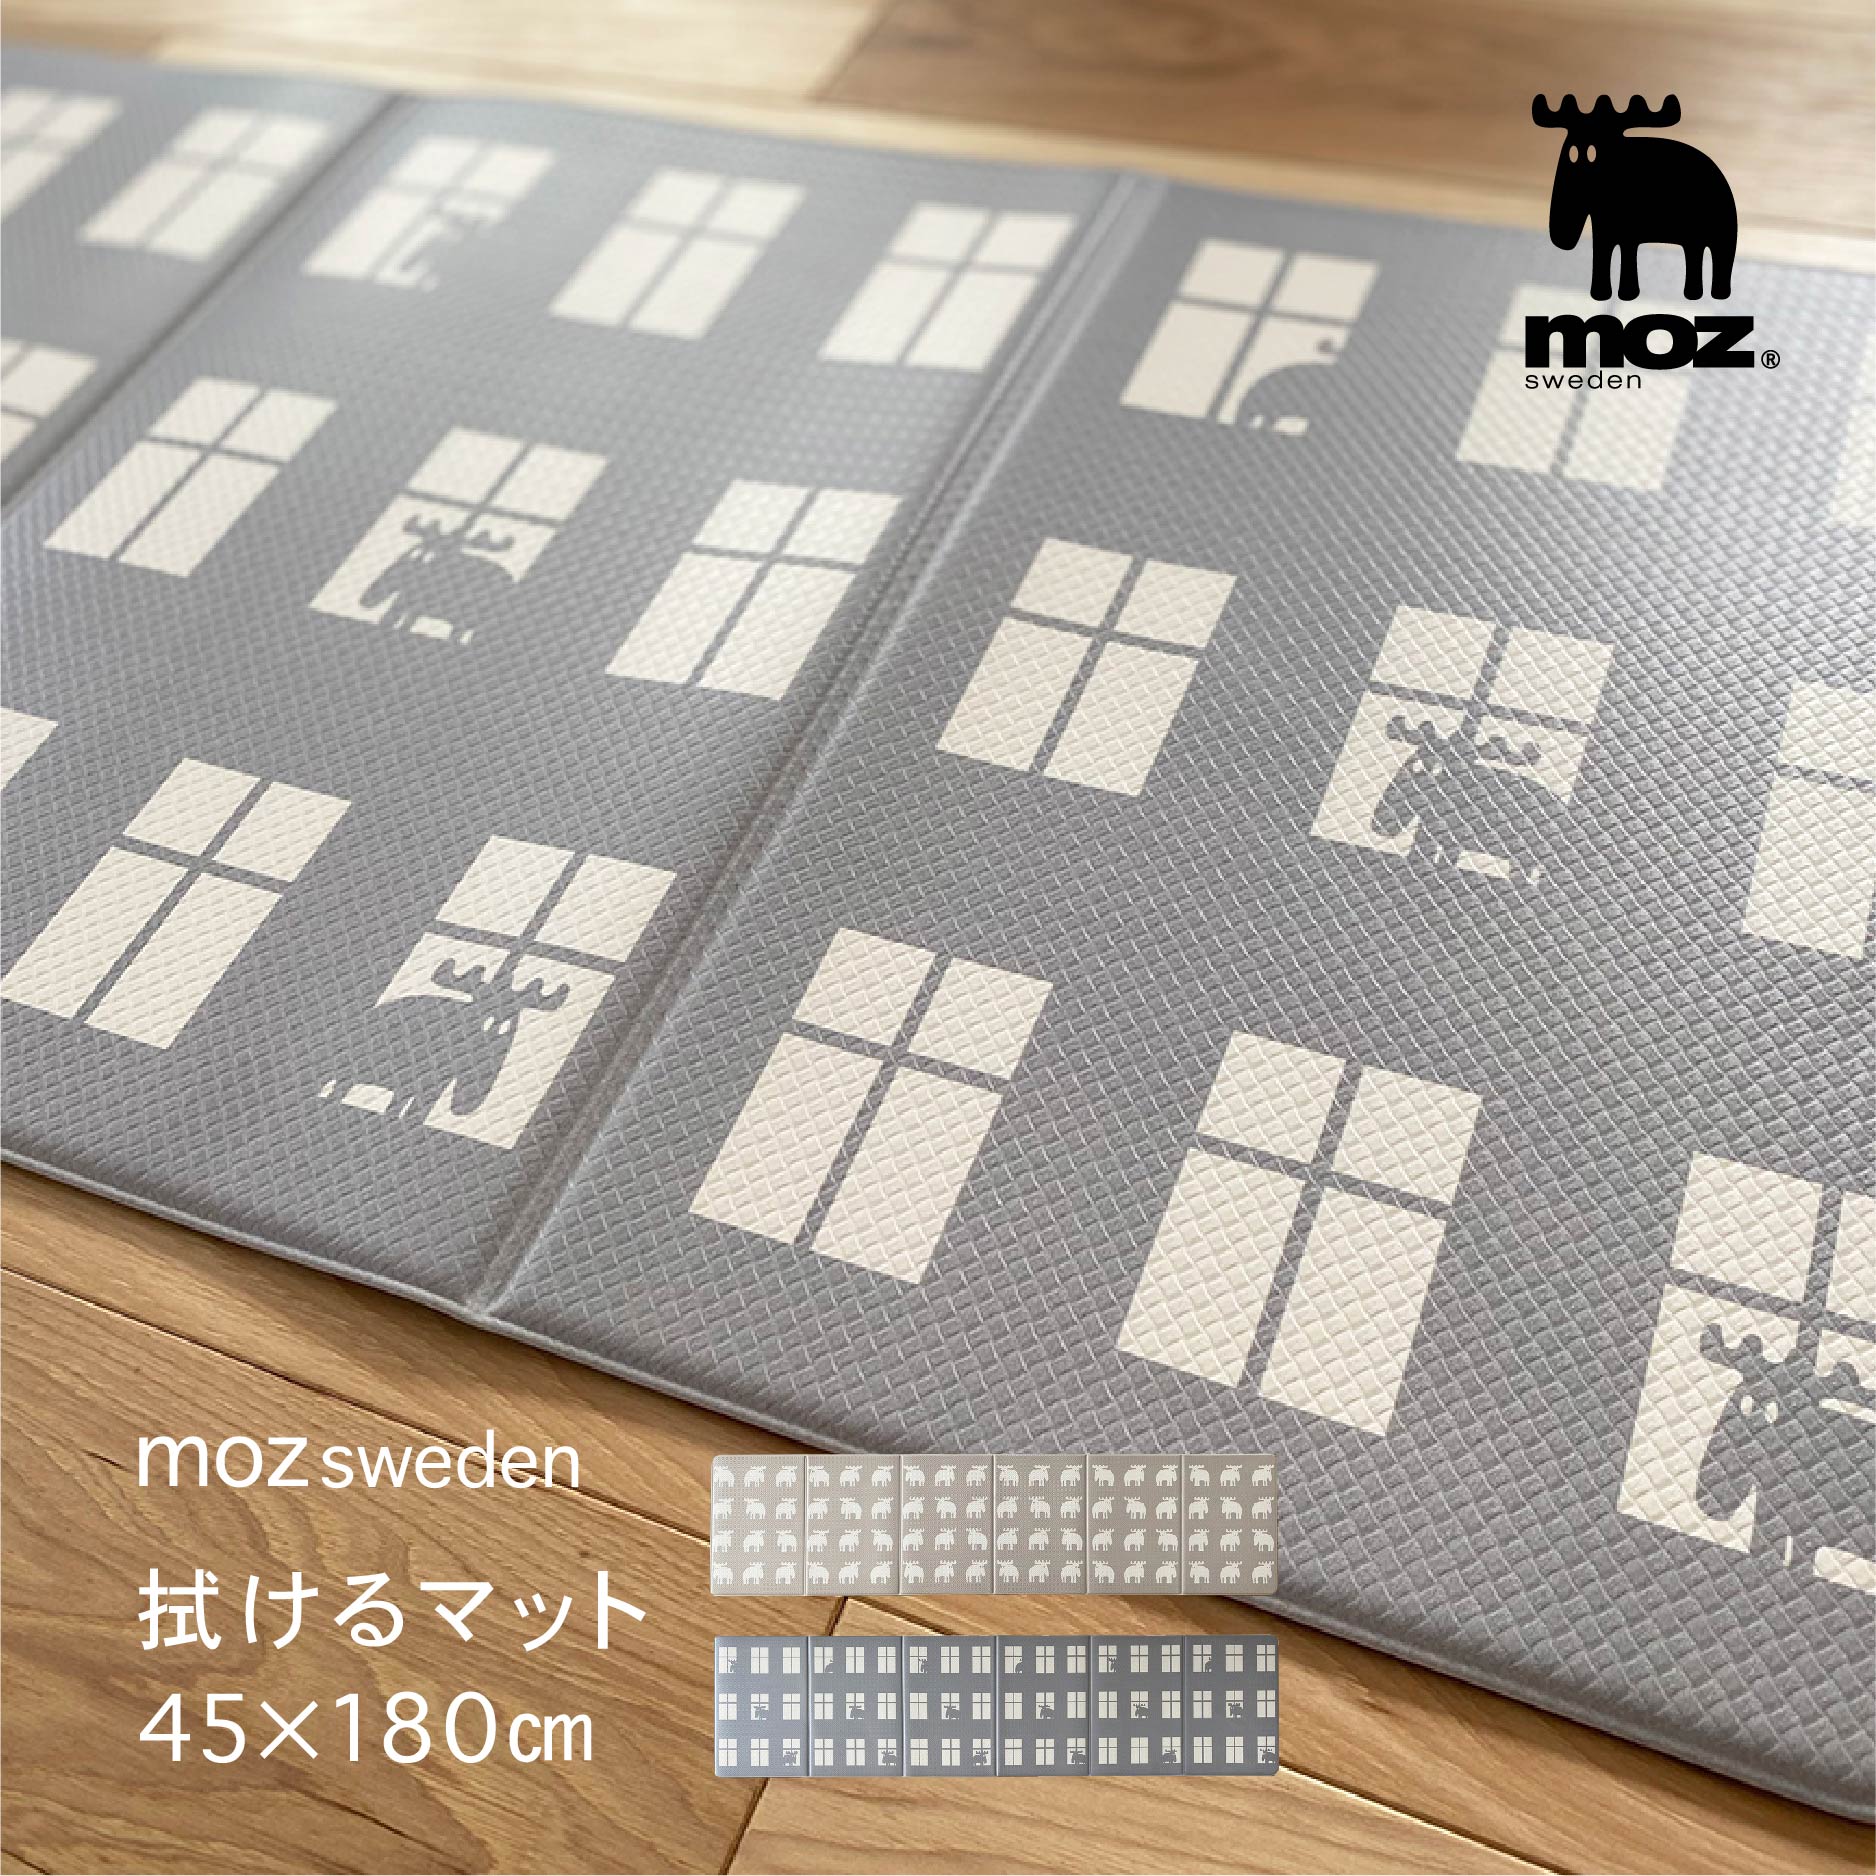 【6月5日 MAX20%OFFクーポン】拭けるマット 45 180cm 403530キッチンマット キッチン マット 滑りにくい 180cm 北欧 キッチン用品 スウェーデン お手入れ簡単 クッション性 コンパクト 疲れに…